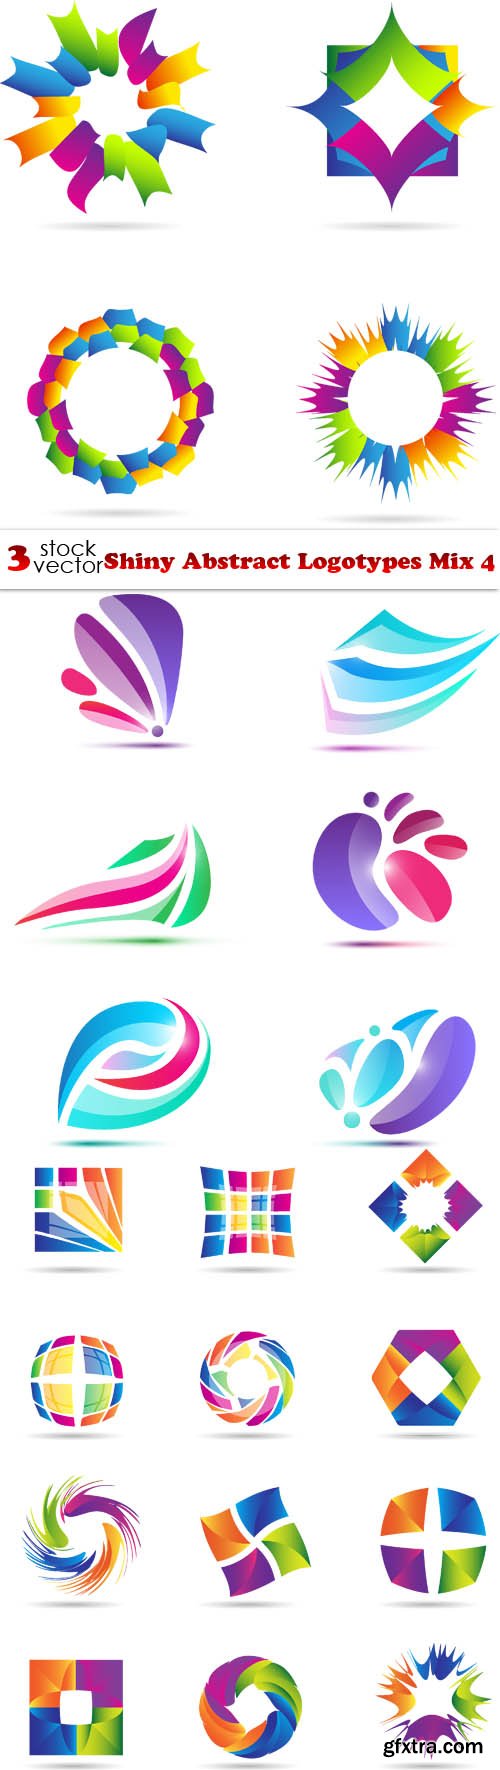 Vectors - Shiny Abstract Logotypes Mix 4